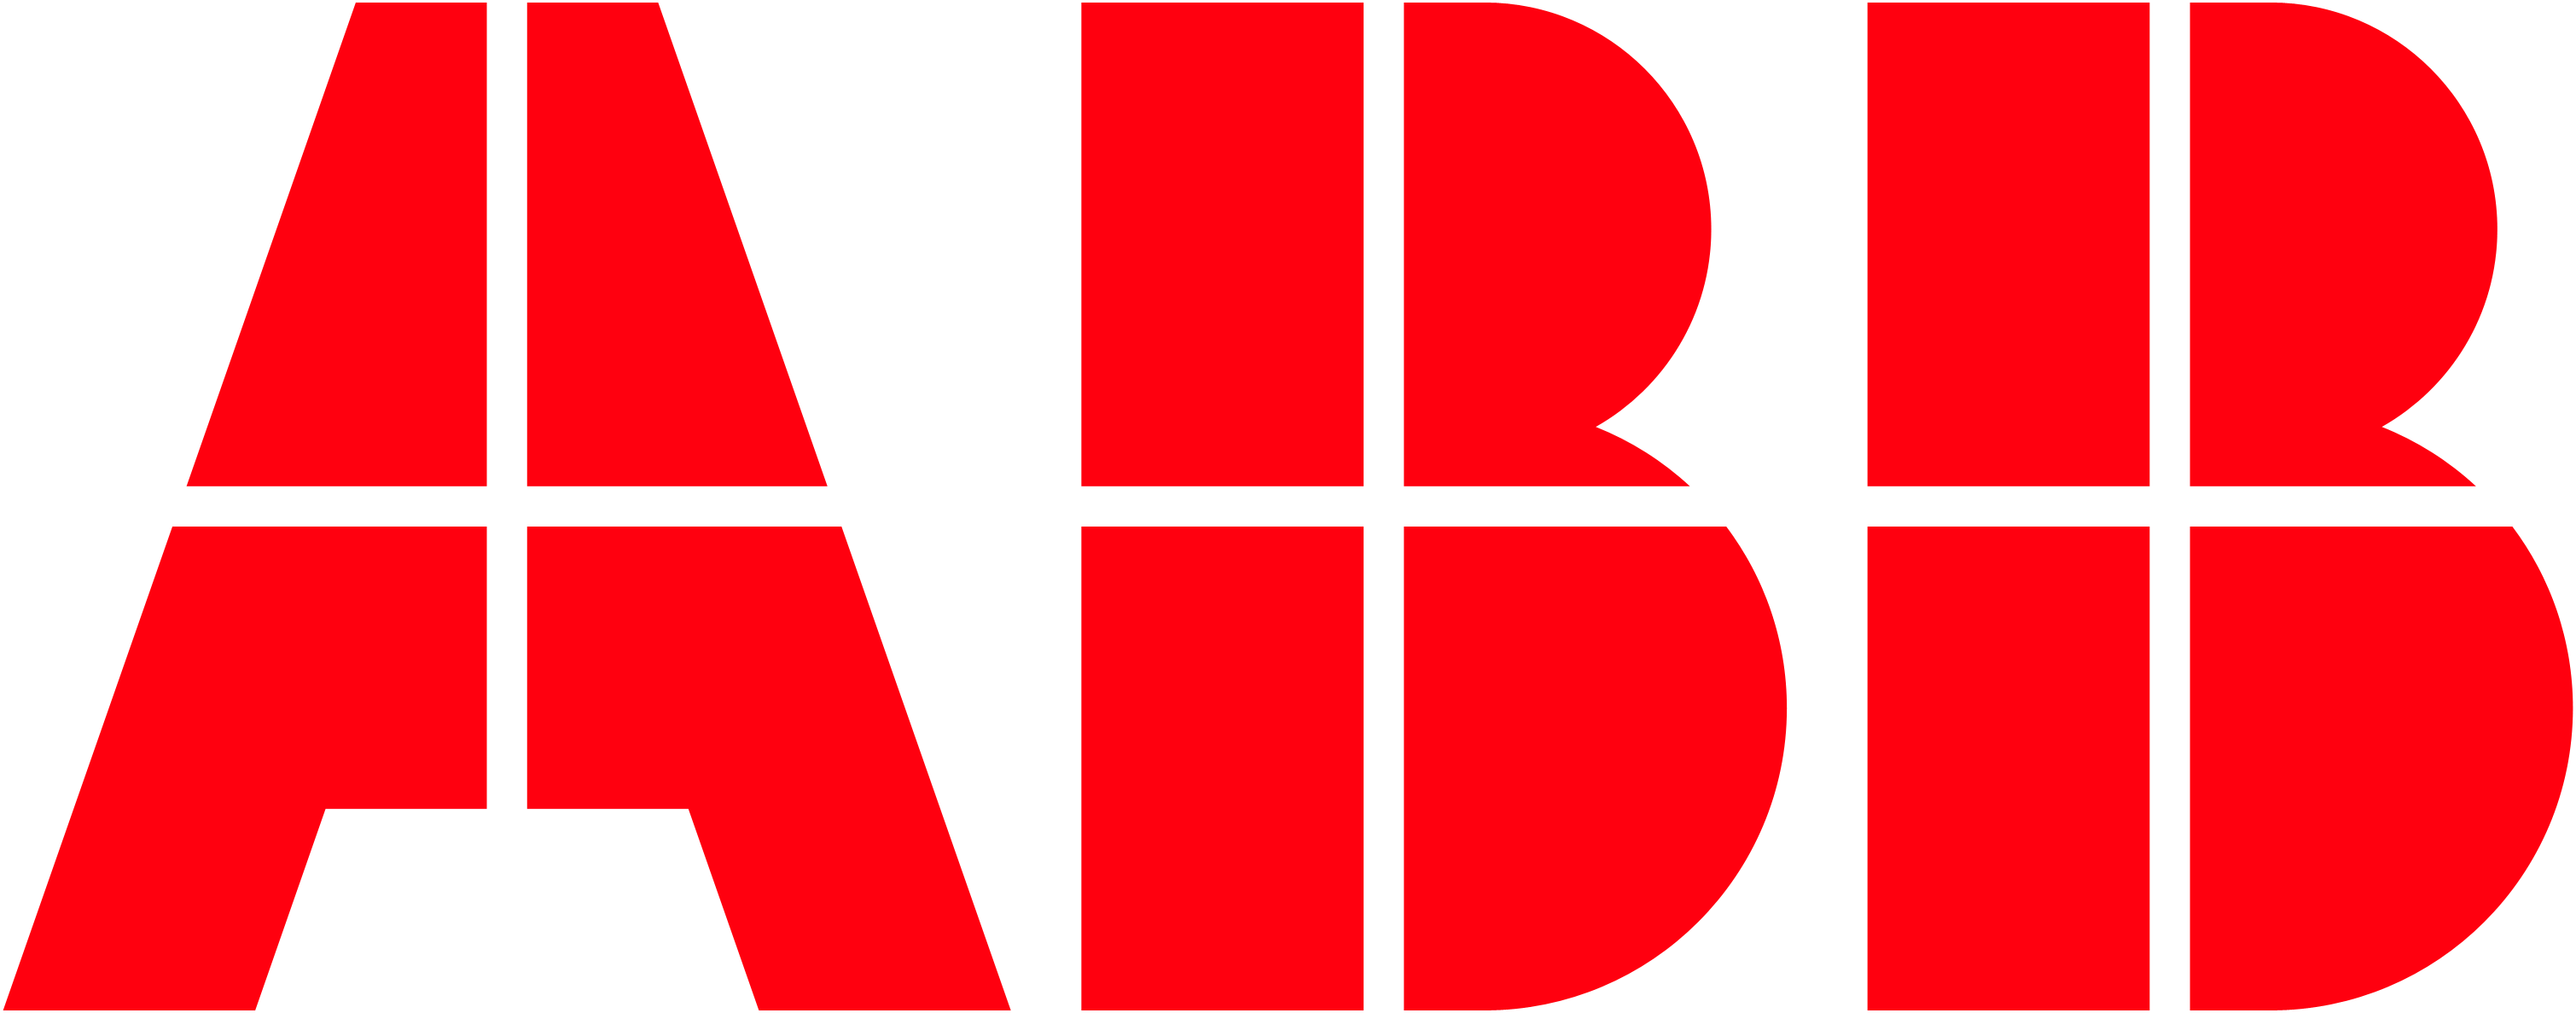 pub:abb-logo.png